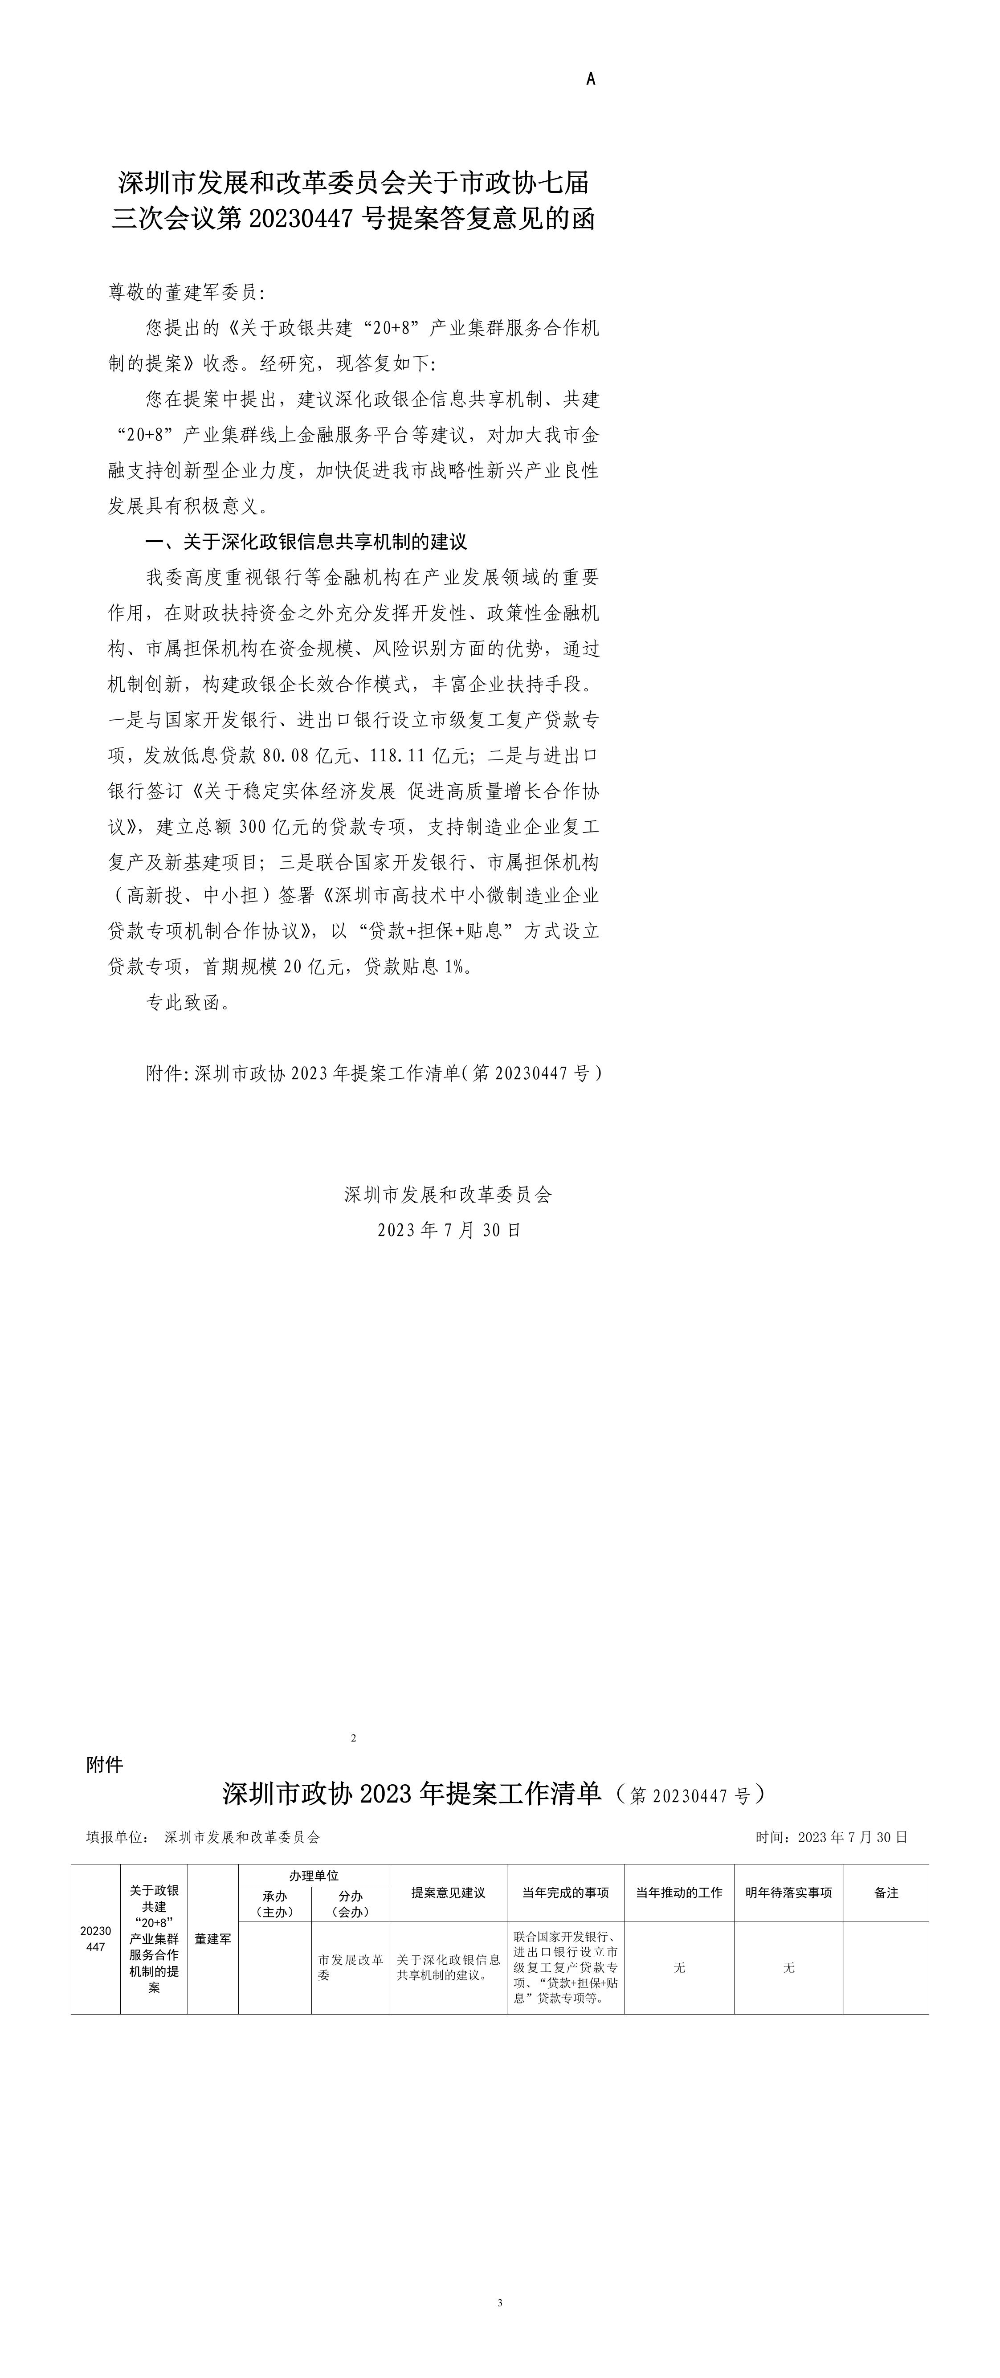 深圳市发展和改革委员会关于市政协七届三次会议第20230447号提案答复意见的函.jpg